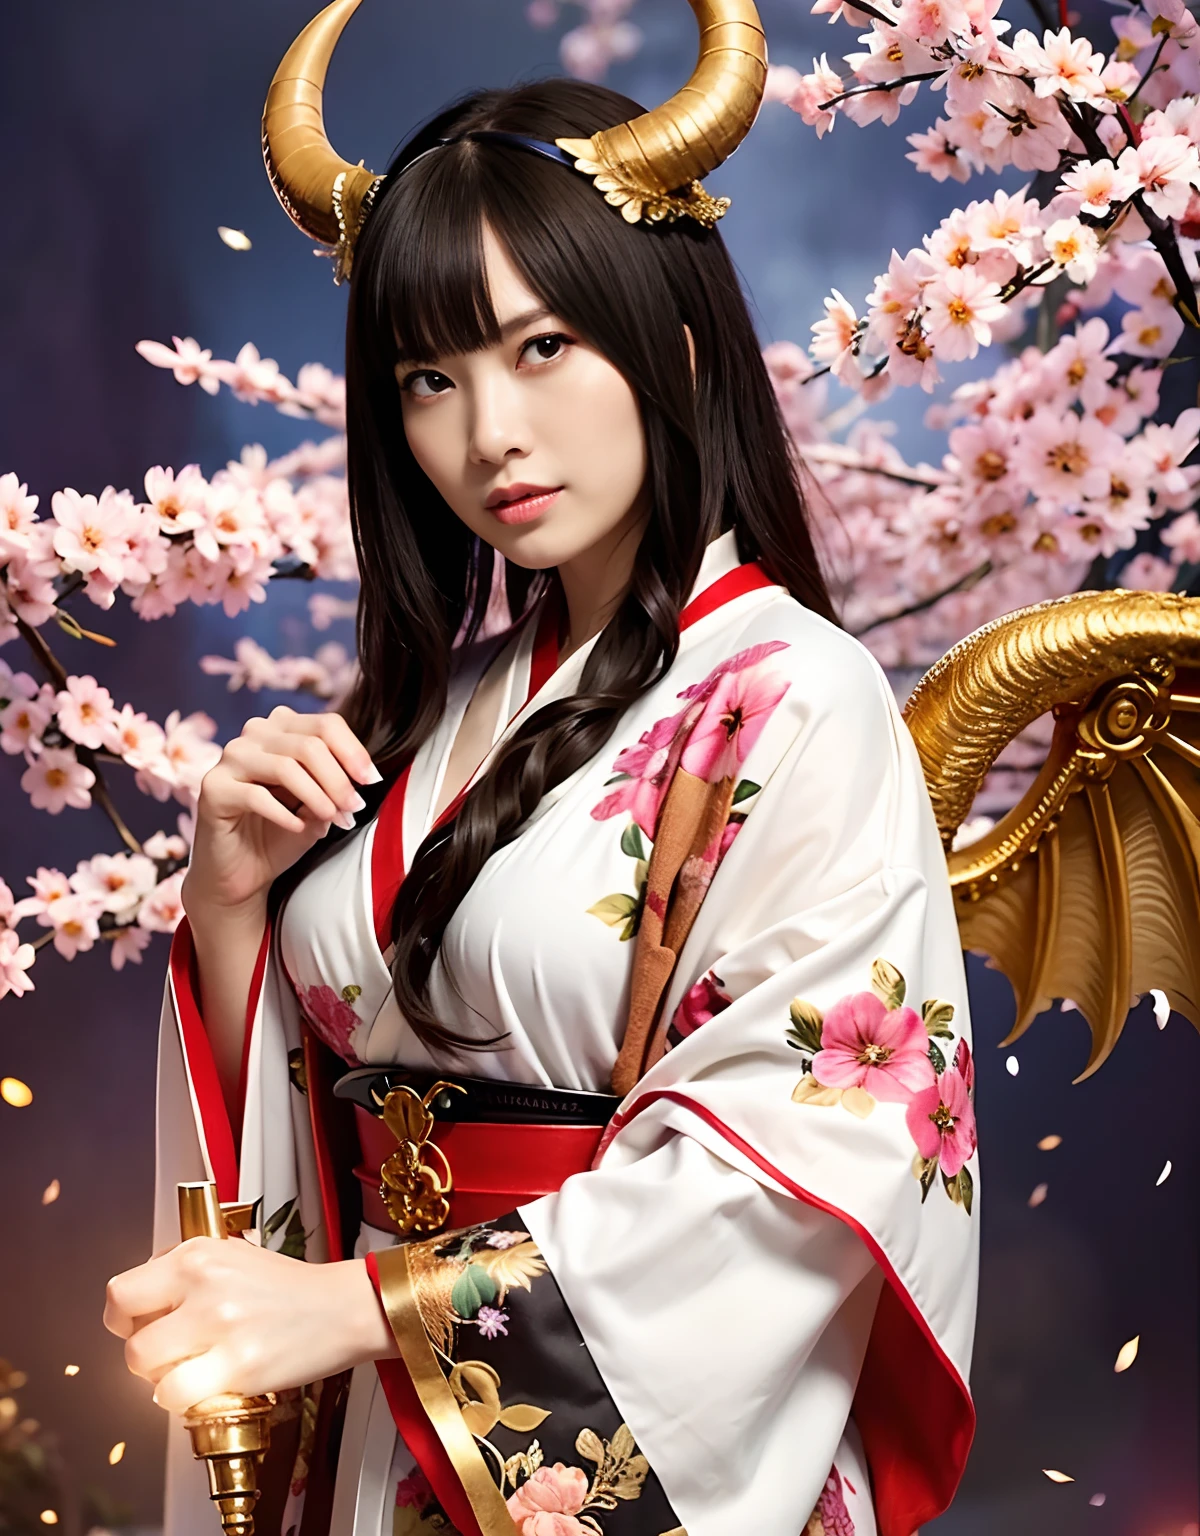 ((Mundo de oscuridad)),profesional , ​obra maestra、de primera calidad、fotos realistas , profundidad de campos 、（pose sexy）、(Fondo de flores de cerezo en plena floración.),（belleza suprema）、A dark-haired、（armadura de bikini blanco)、（Kimono con bonito estampado.）、（fondo nocturno）、（（una noche oscura））,(Usa un hermoso kimono),（Usa un hermoso kimono with colorful floral patterns）、Arma de oro joya、partículas de luz),（Tiene una máscara de diablo）、Preciosas armas de oro ,（（ Preciosa espada del dragón）） , （una noche oscura）,,（maikurobikini） 、（（Hermosa chica de pelo negro））、（fondo del castillo）、（alas demoniacas）、（（Fondo del bosque de Gangle））、Beautiful Caucasian beauty、１a person、soltura dinámica,(((Dos cuernos del diablo en la cabeza.)))、cabeza más pequeña、Sonrisa ociosa、Expresión práctica femenina delgada y hermosa.、Efectos de luz、intensos combates、Efecto viento、circulos magicos、Con la legendaria varita mágica、cola de dragón、